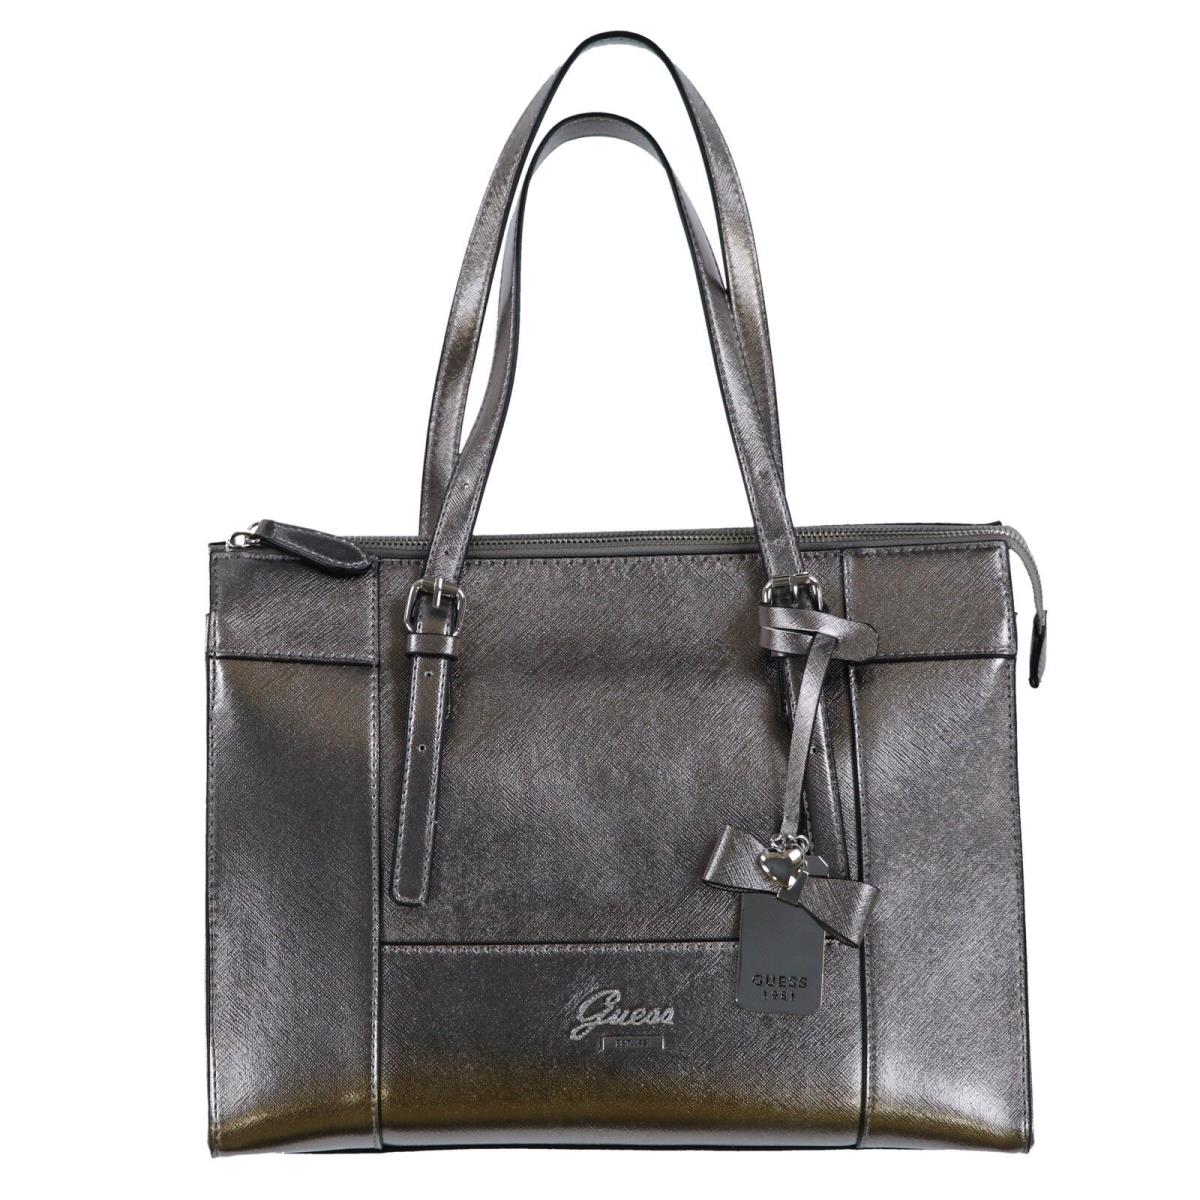 Guess Womans Purse Shoulder Bag Handbag Zip Top Tote Metallic Grey